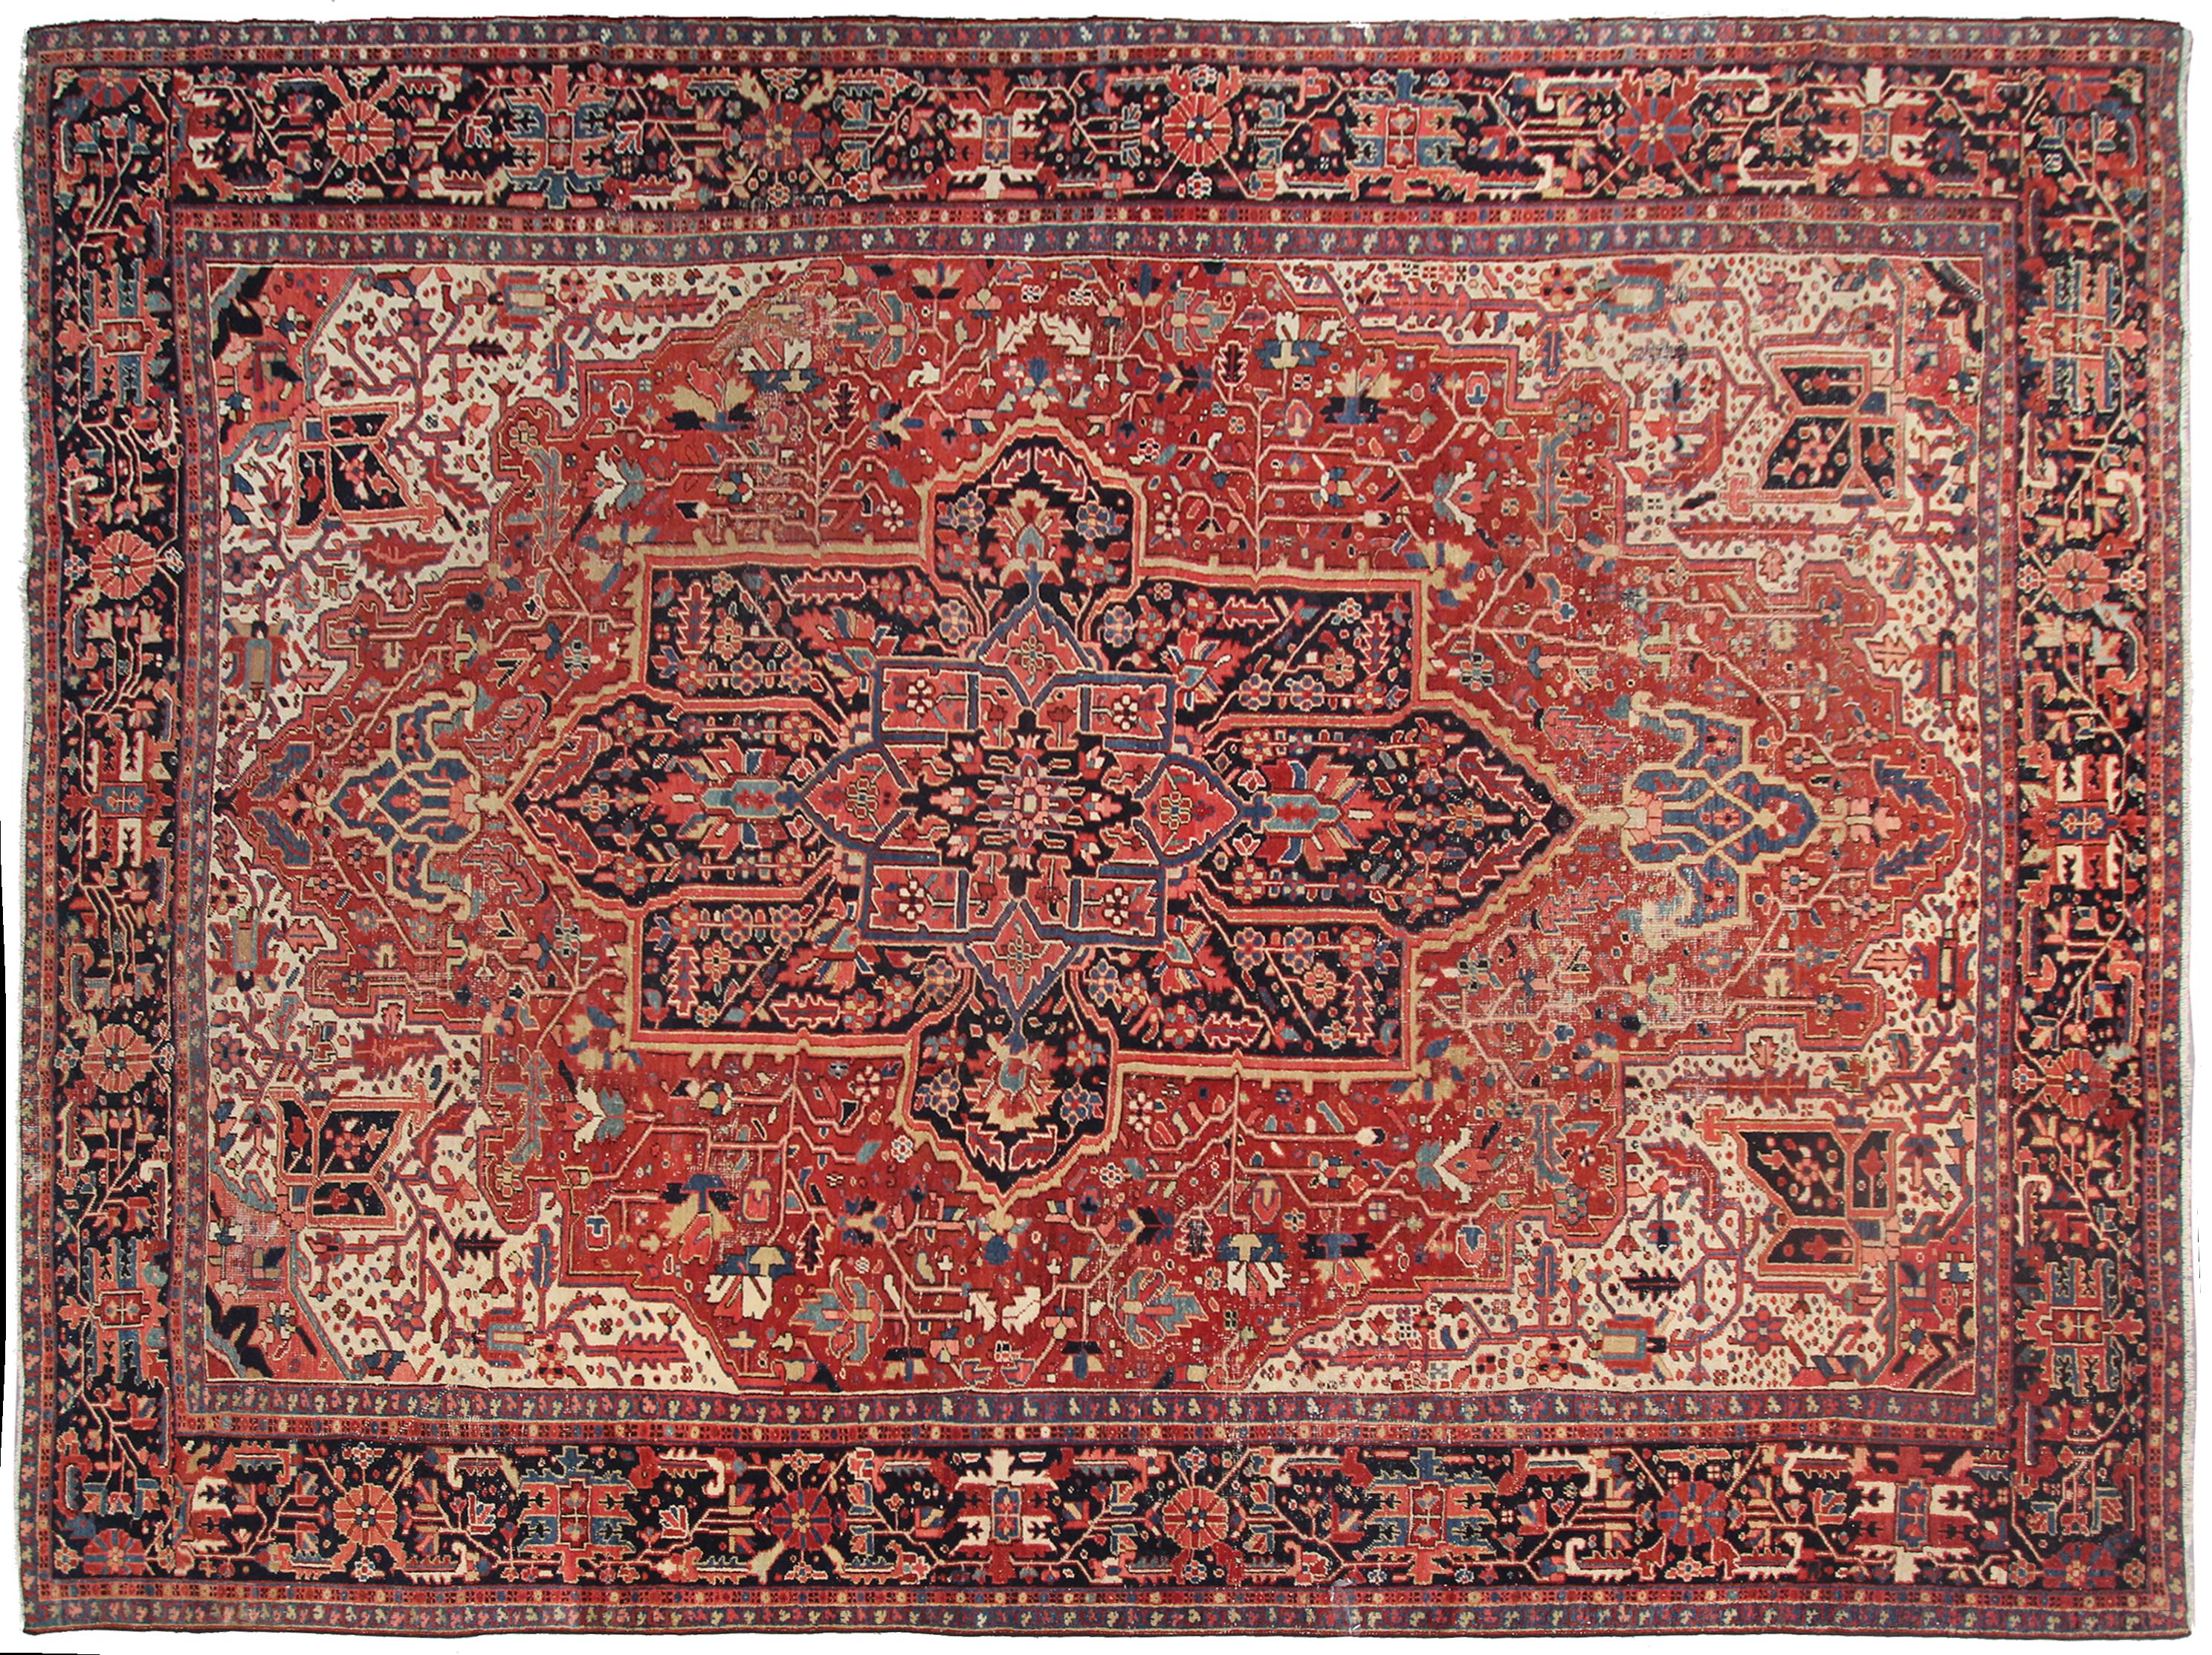 Rare antique rug Heriz Serapi rug oriental carpet red, measures 11' x 14'.
330cm x 427cm.

circa 1920.

